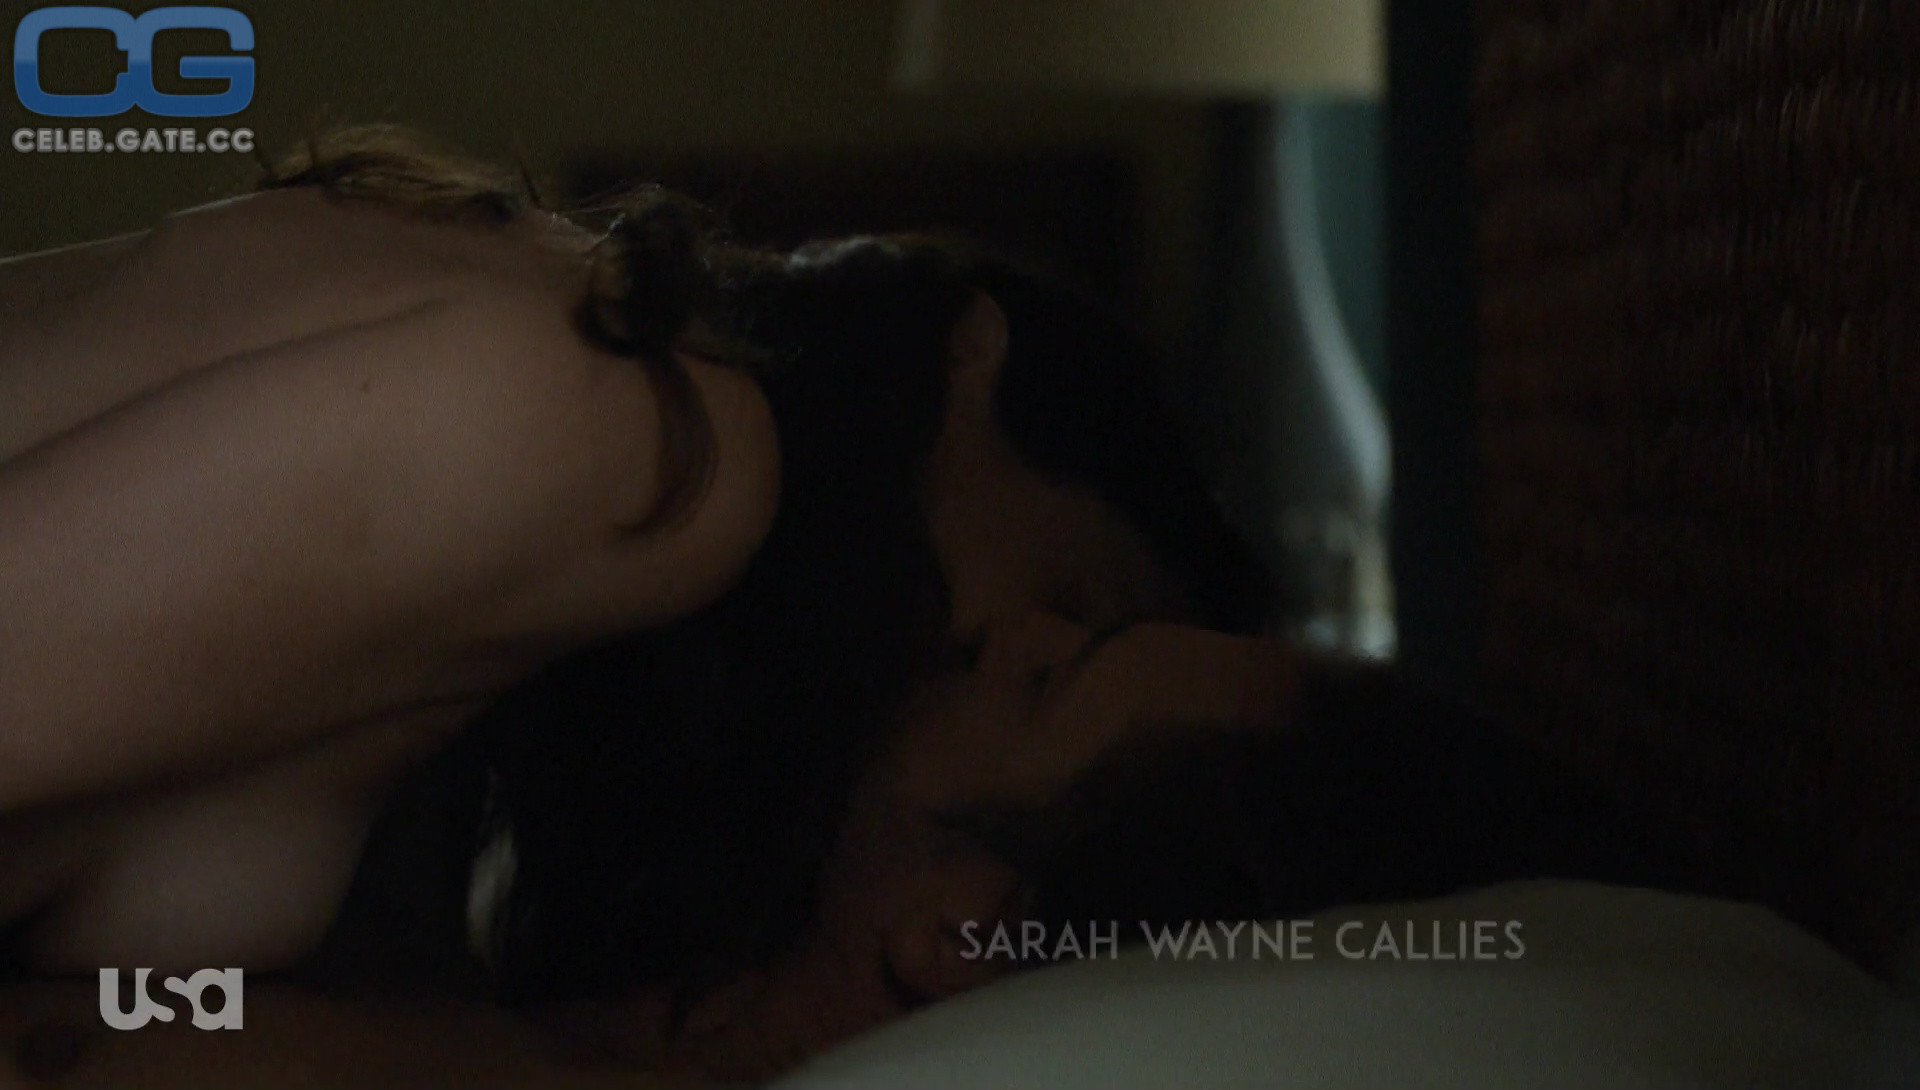 Porn callies sarah wayne Sarah Wayne